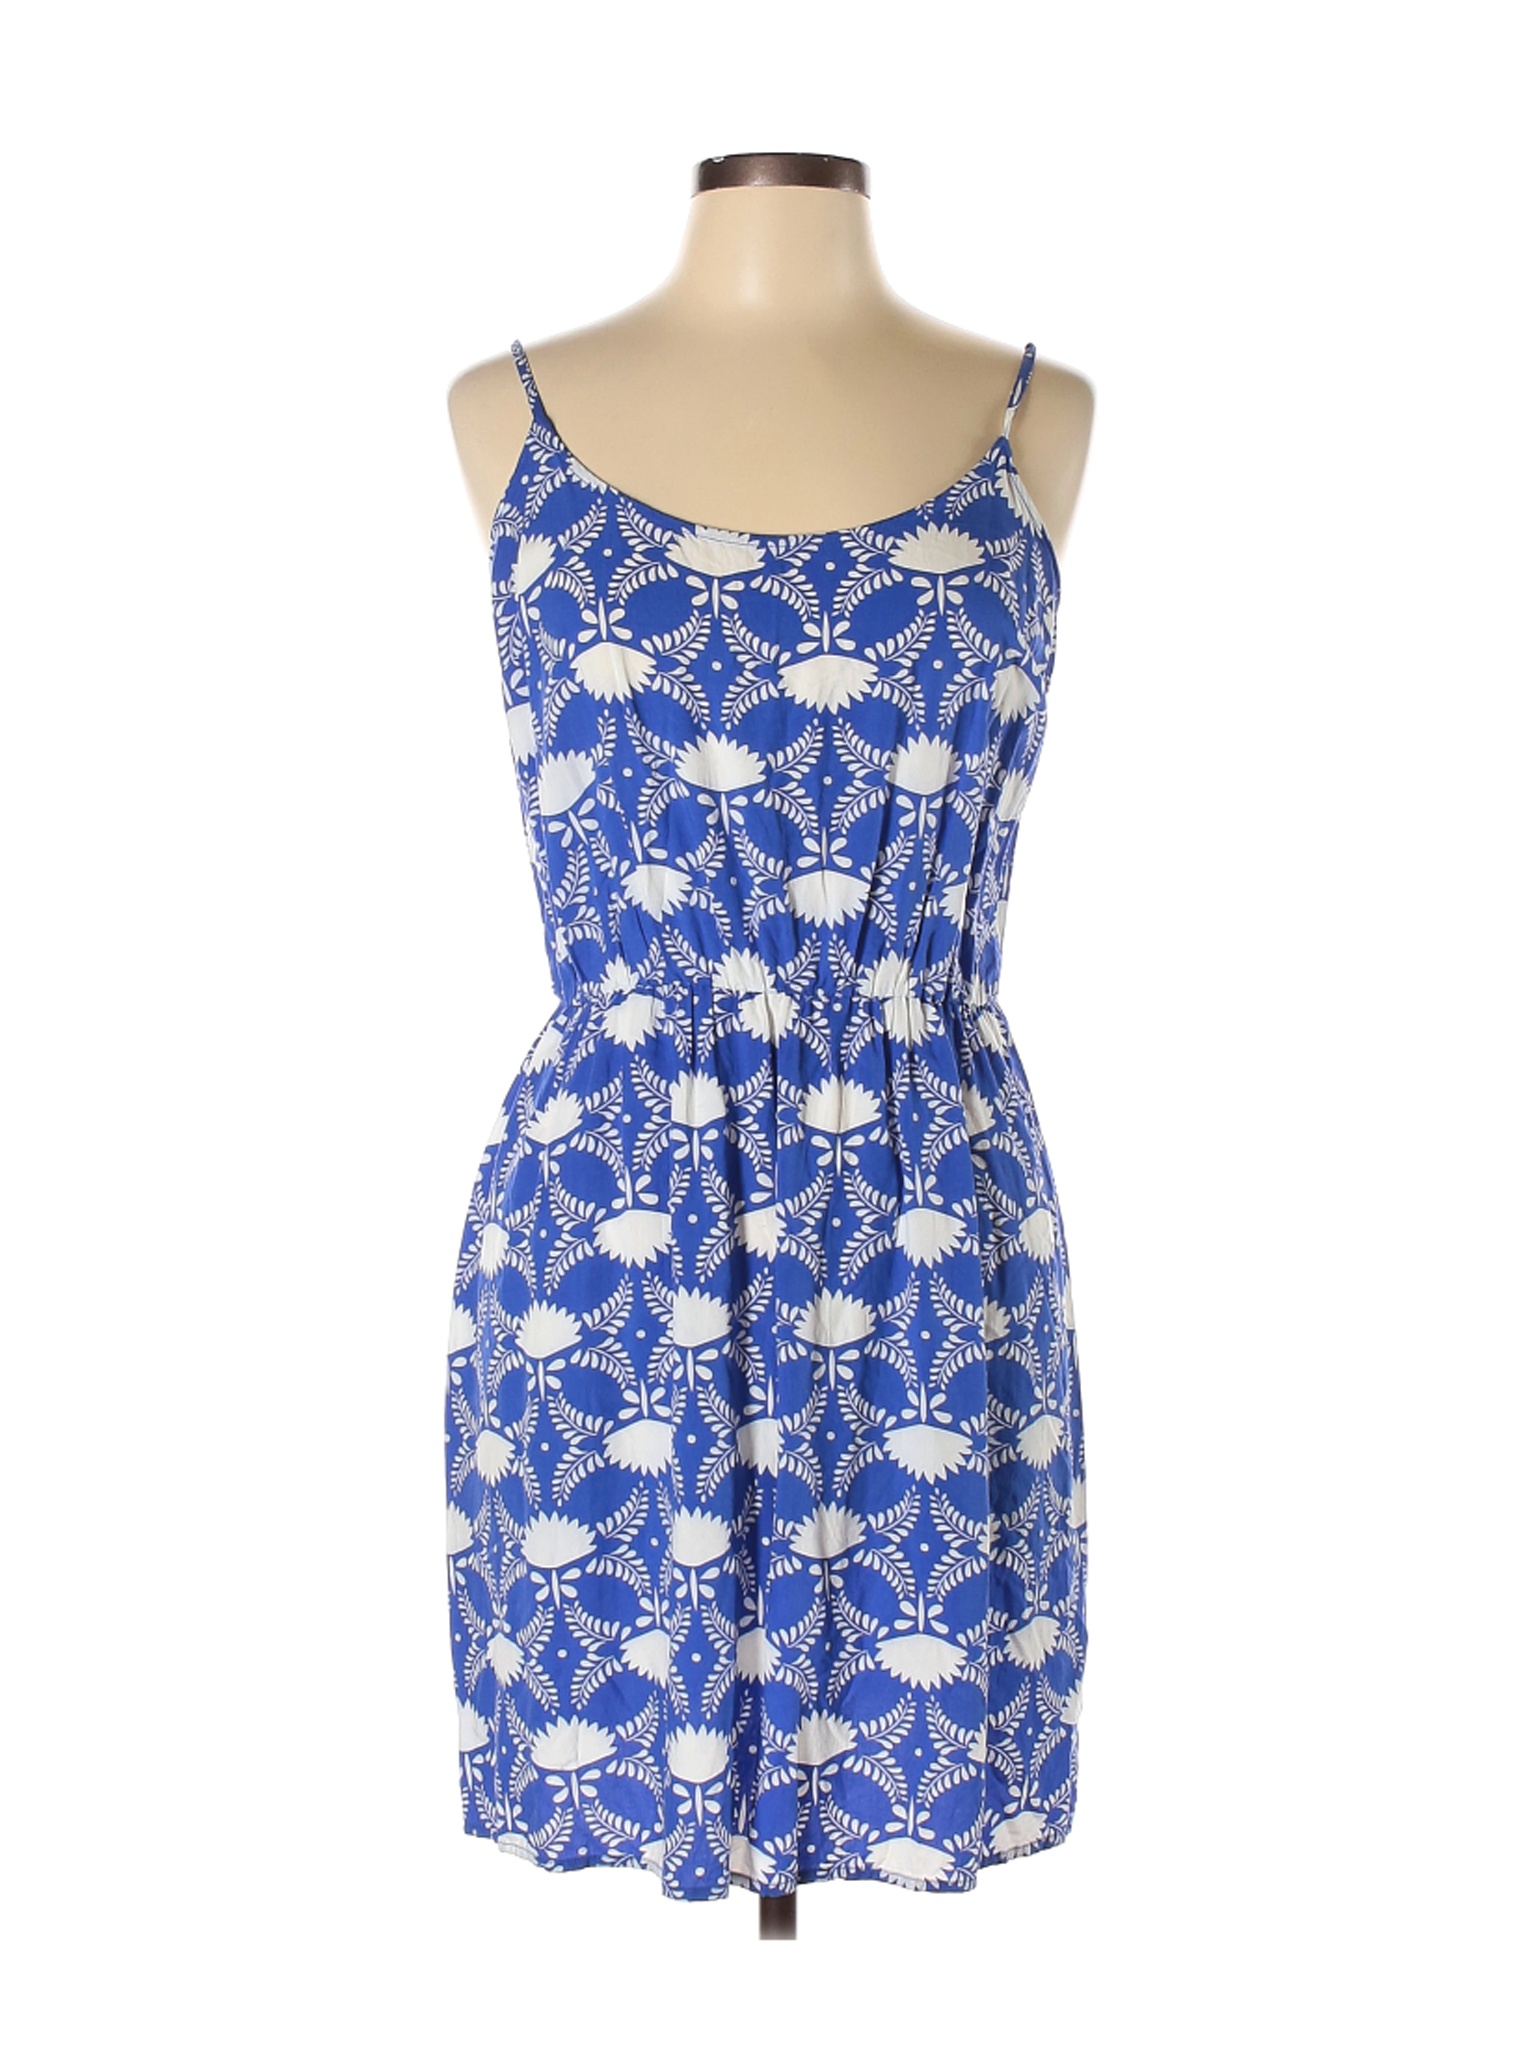 Old Navy Women Blue Casual Dress L | eBay